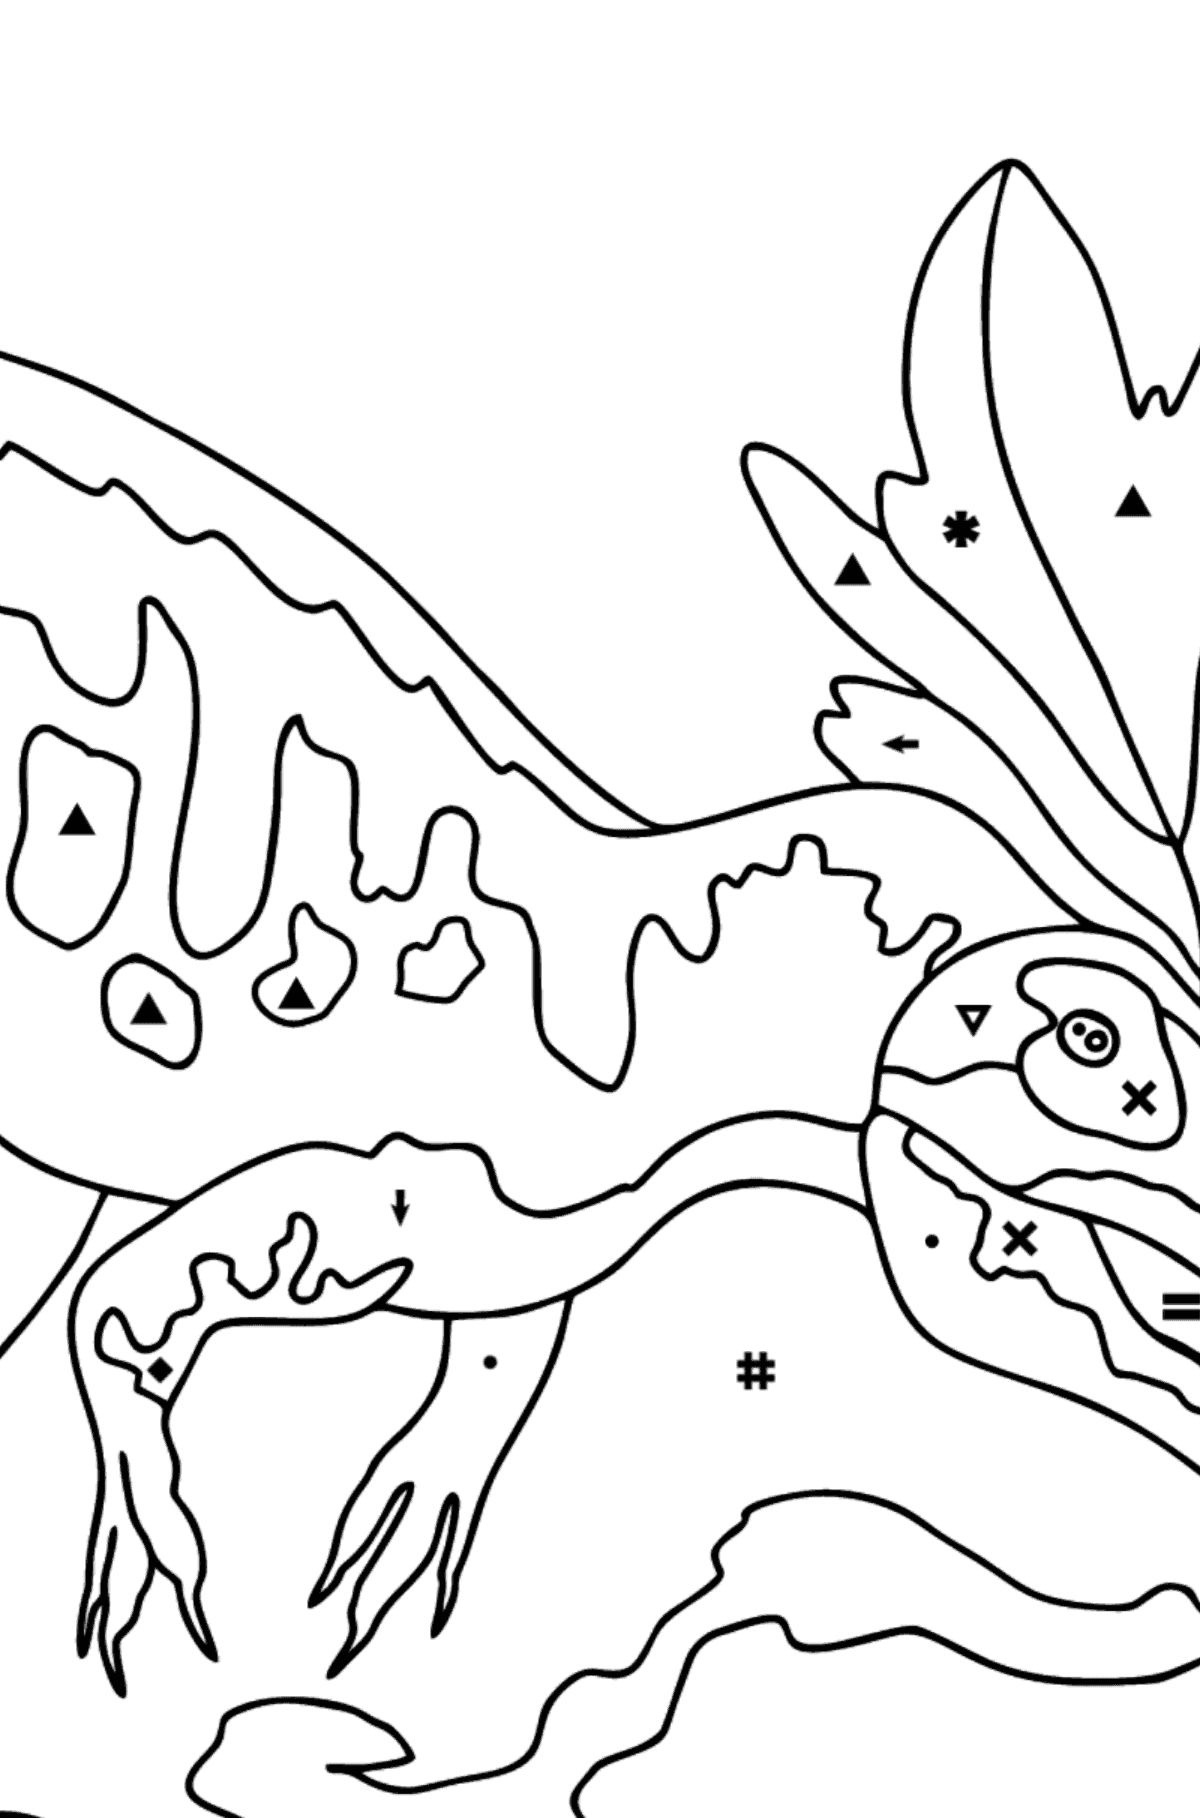 Coloriage Allosaurus (difficile) - Coloriage par Symboles pour les Enfants